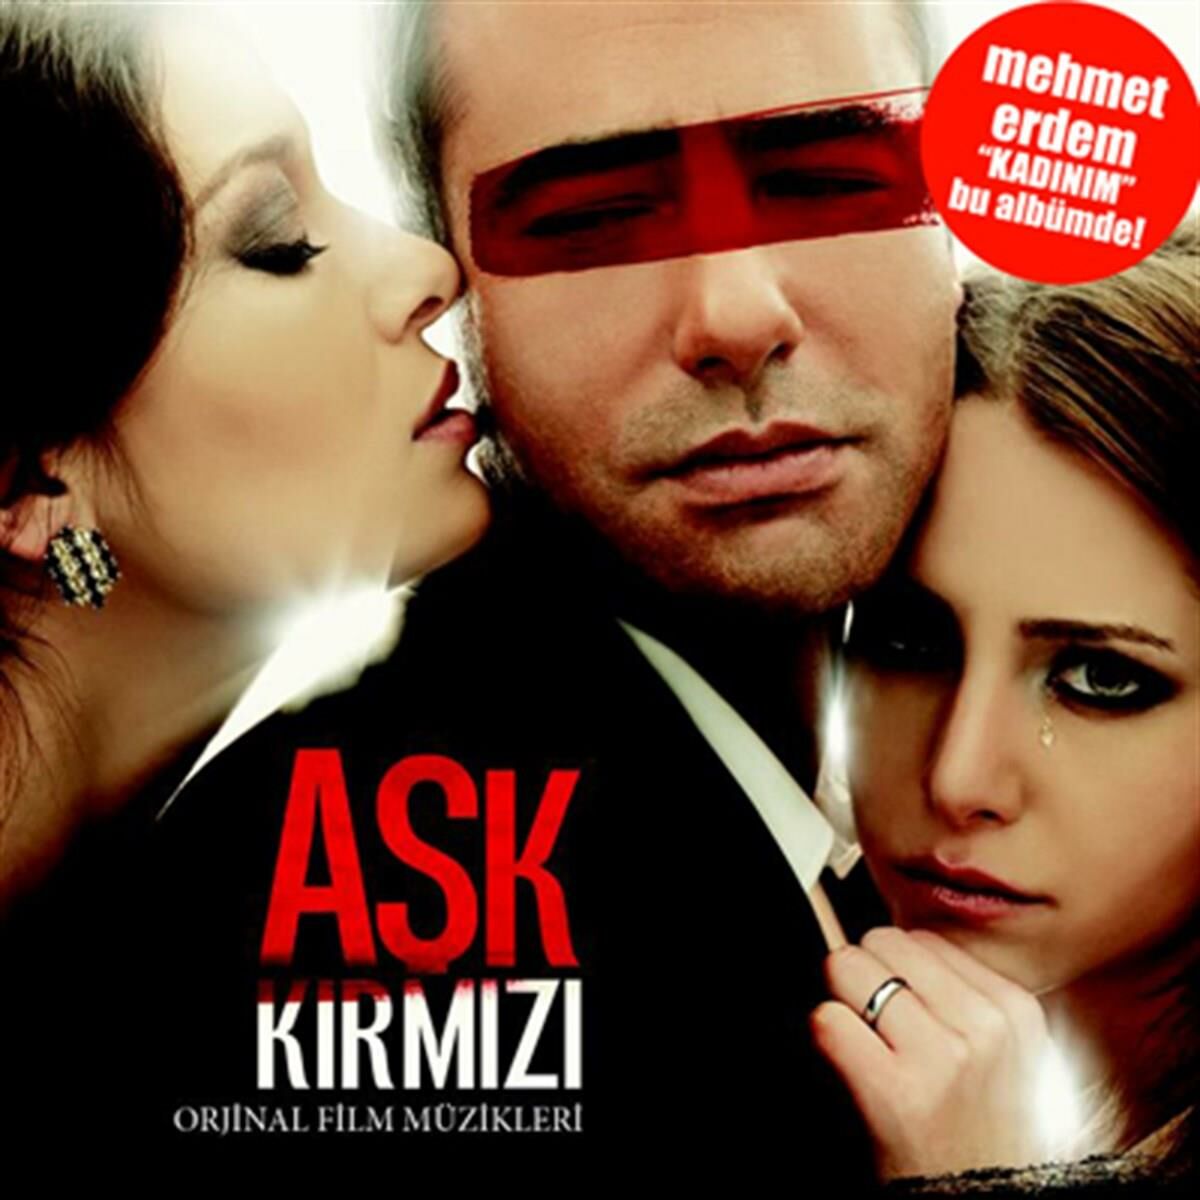 AŞK KIRMIZI - ORİJİNAL FİLM MÜZİKLERİ / SOUNDTRACK - MEHMET ERDEM (2013) - CD AMBALAJINDA SIFIR